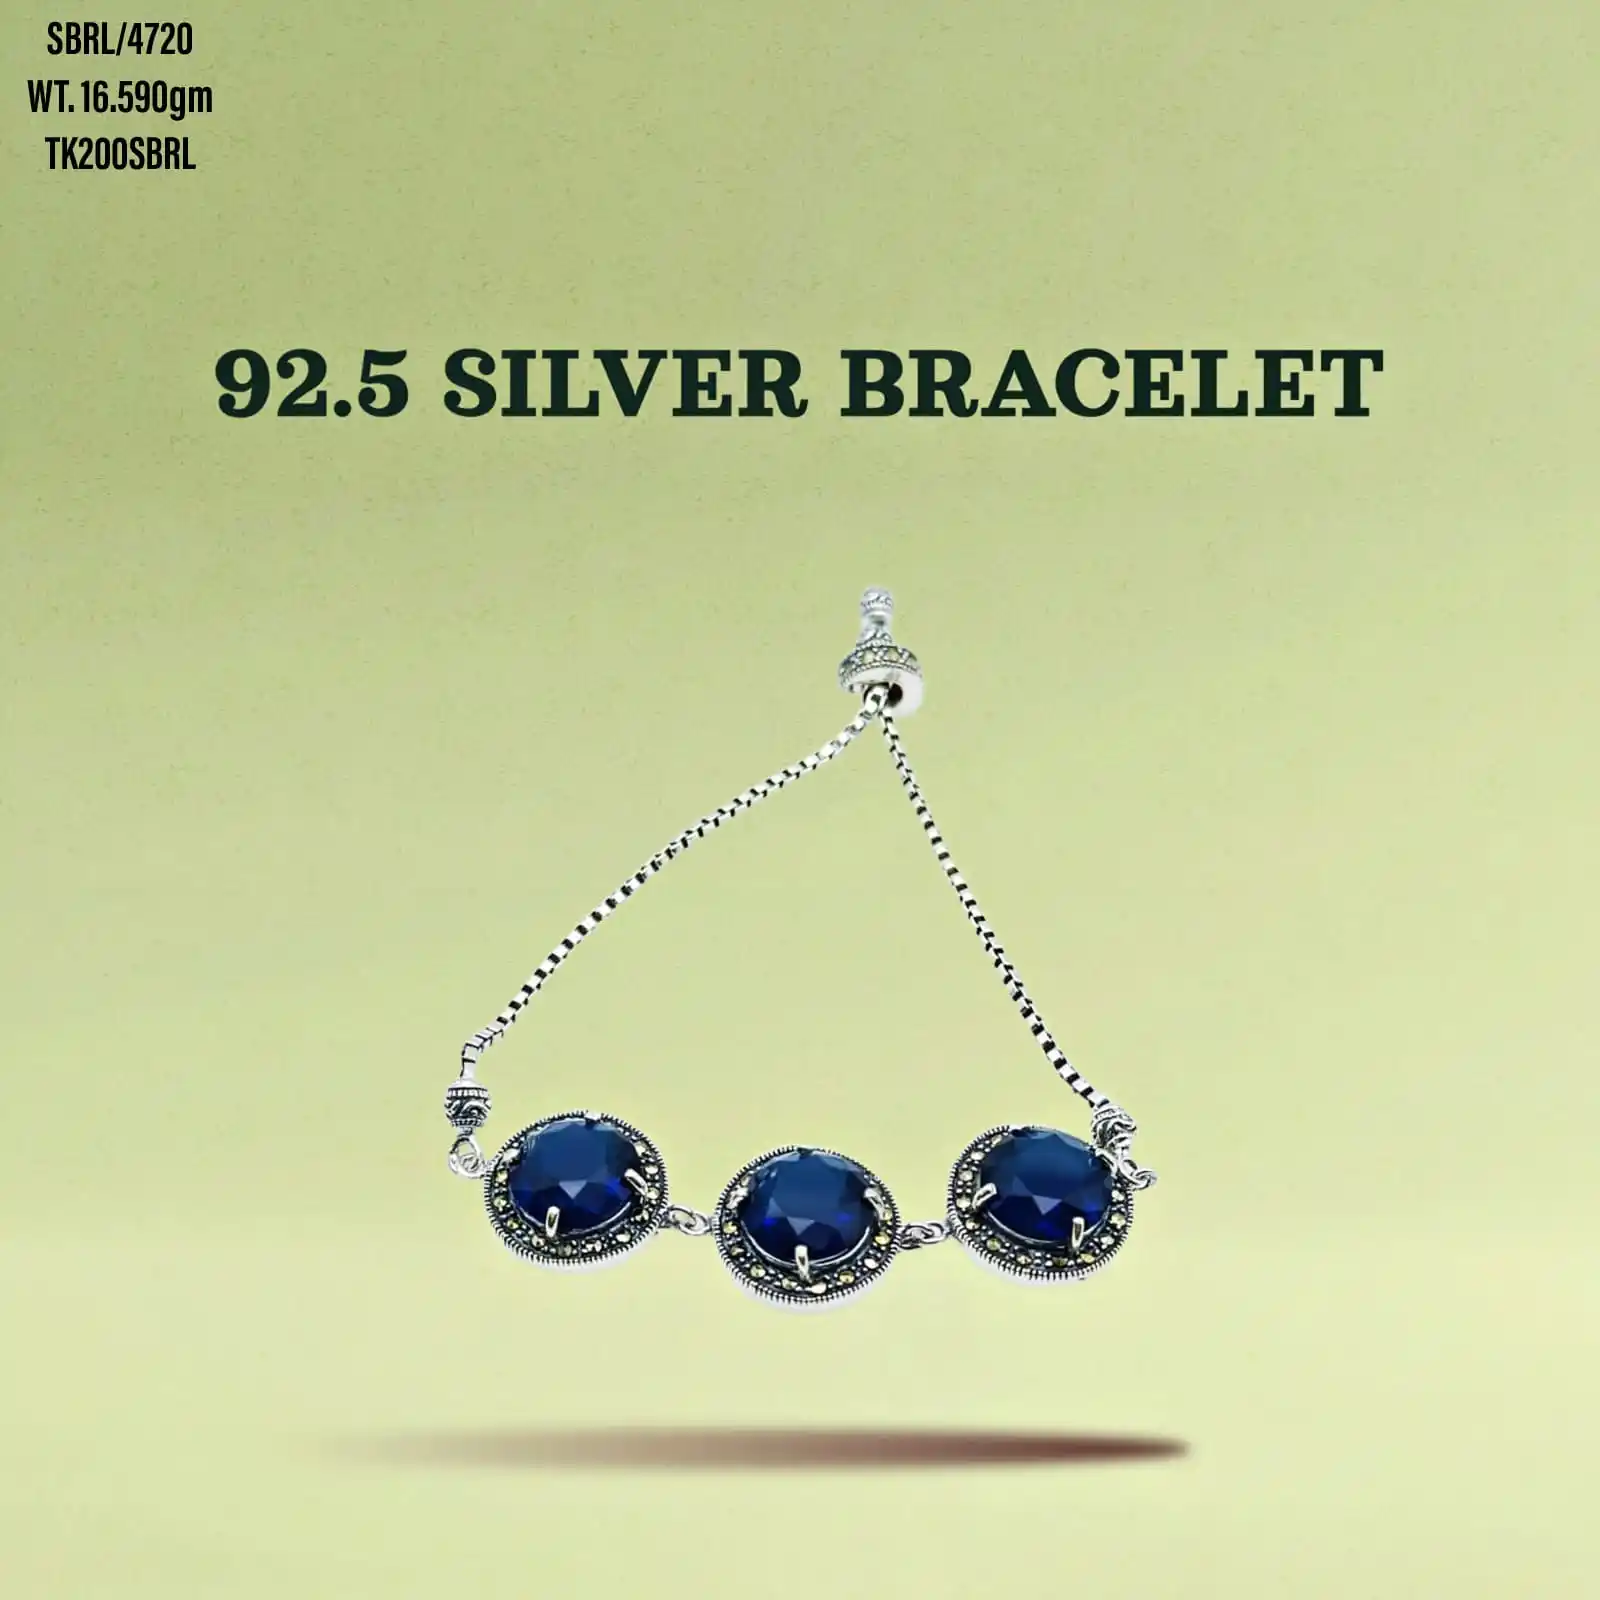 Gelang batu permata biru wanita, perhiasan perak 925 sepuhan emas dapat disesuaikan